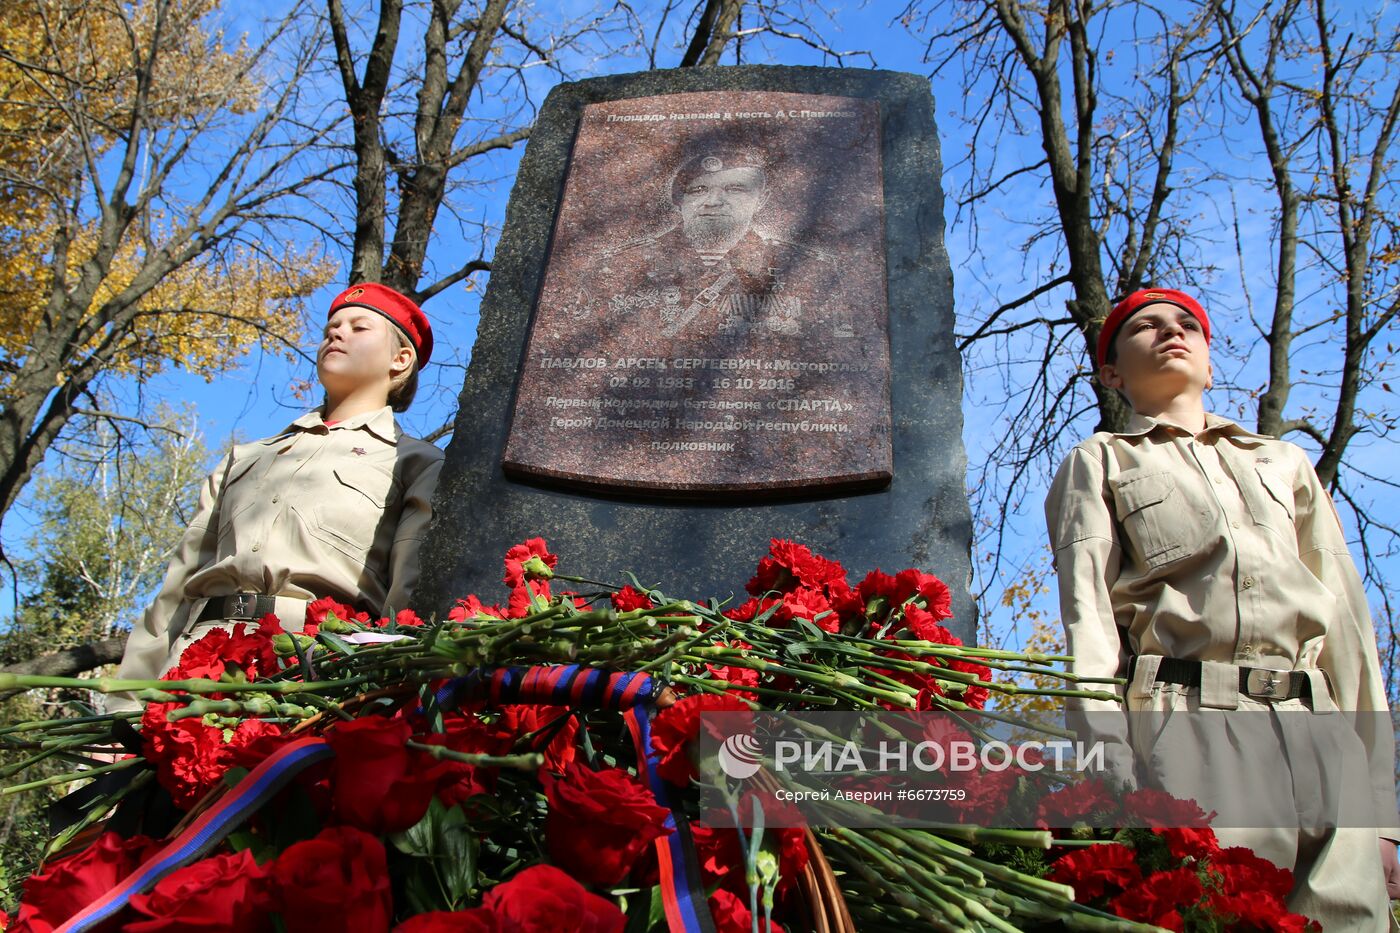 В Донецке установили памятник герою ДНР А. Павлову 